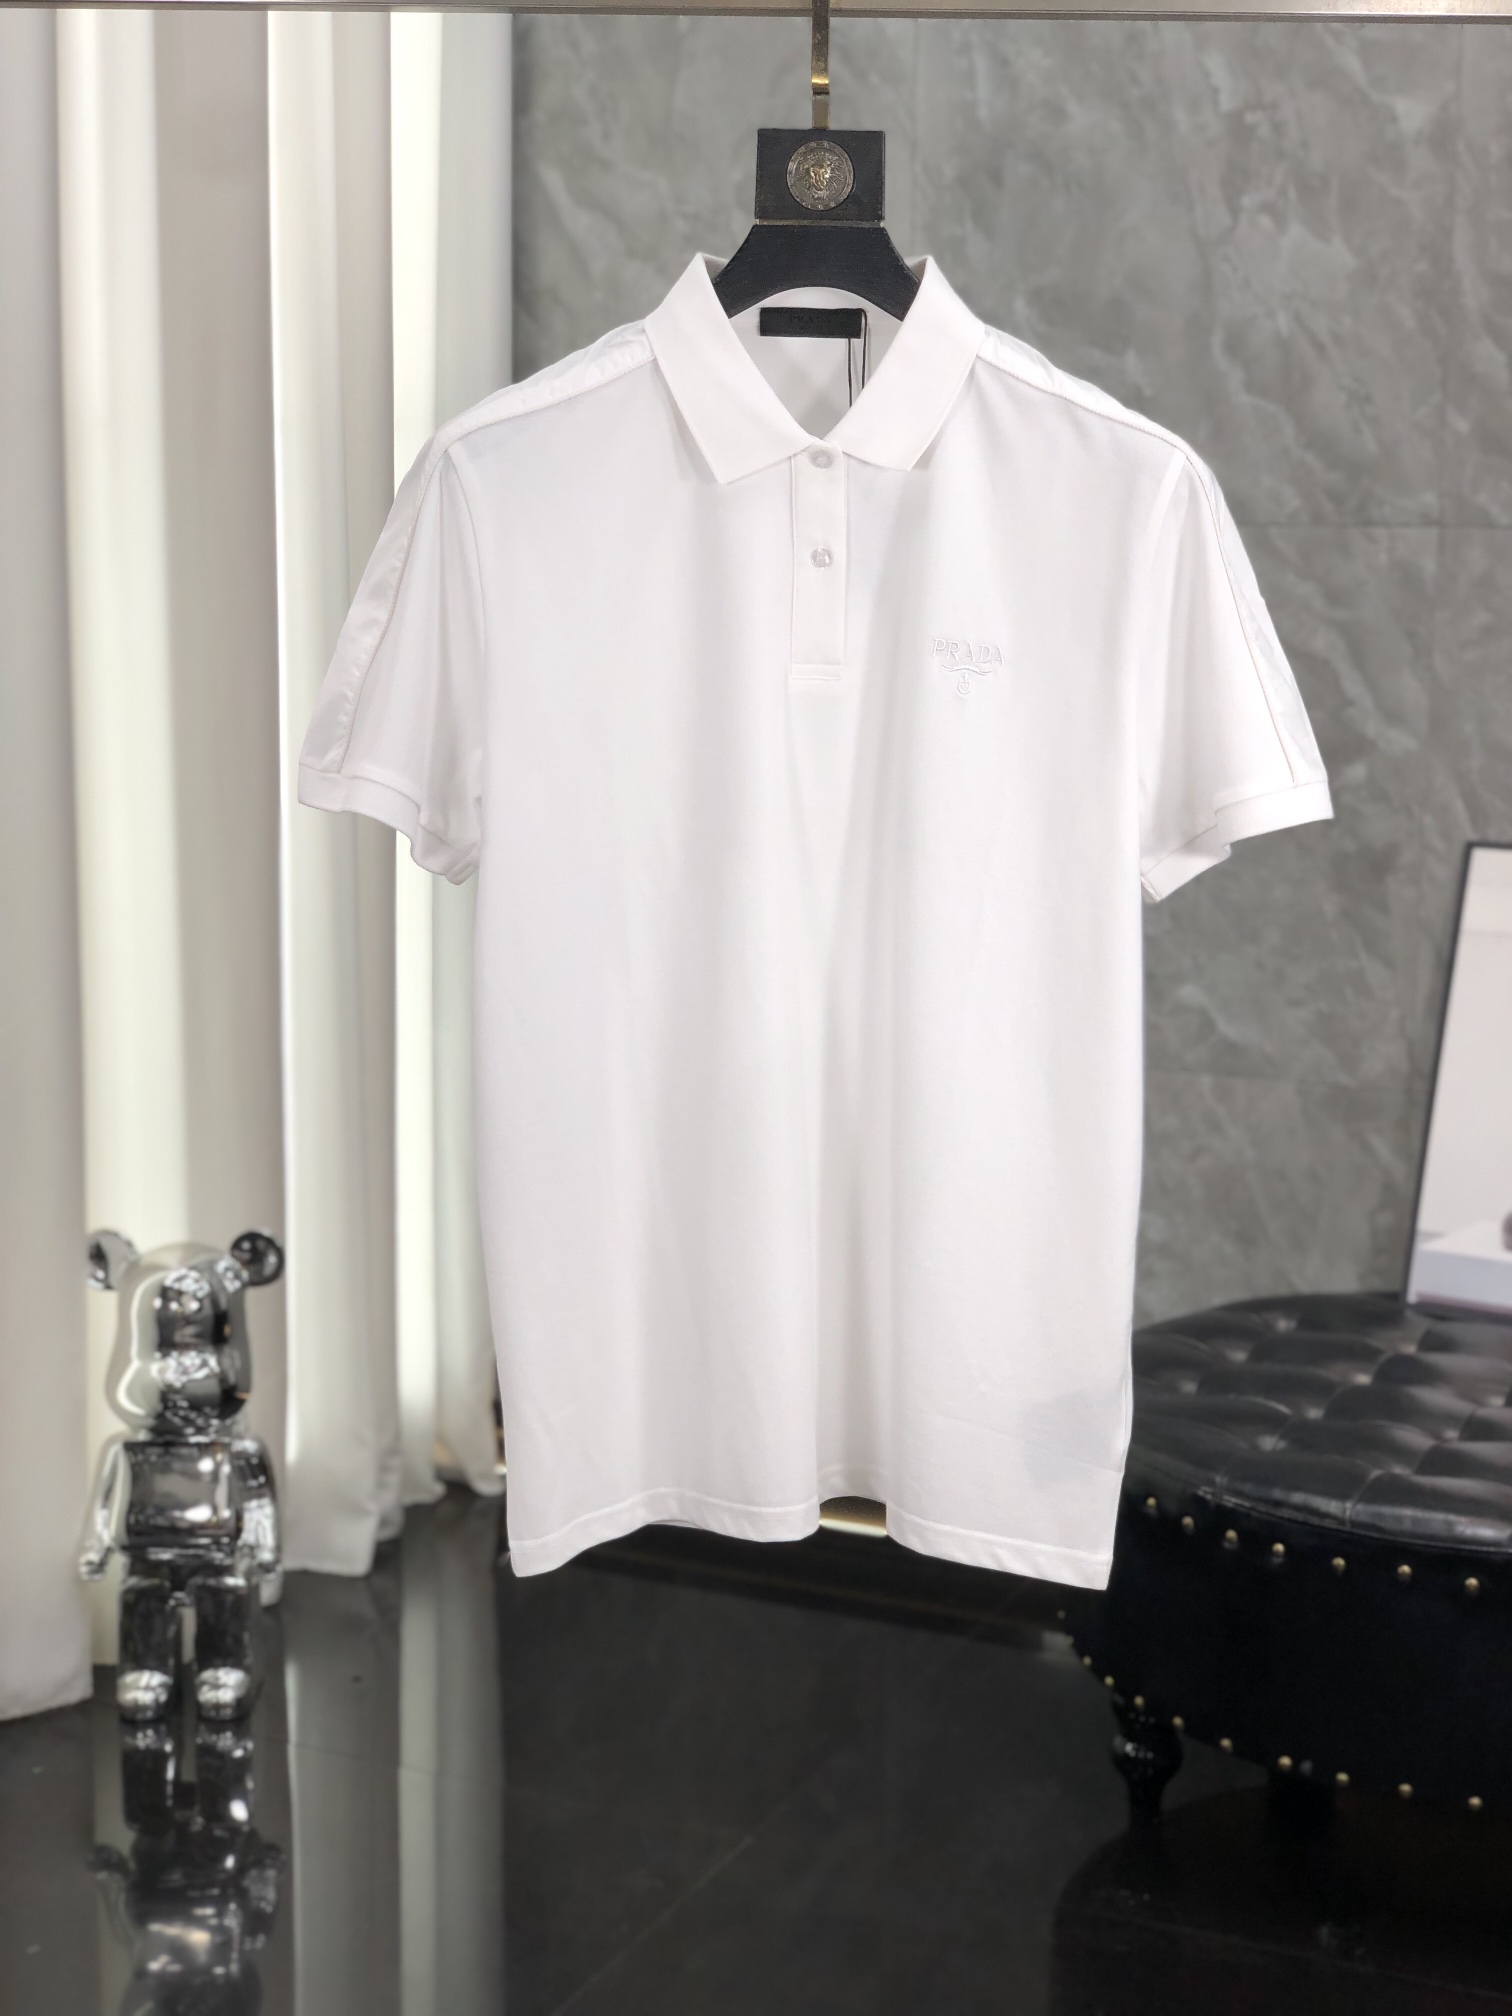 Prada Clothing Polo Wholesale Replica
 Cotton Spring/Summer Collection Fashion